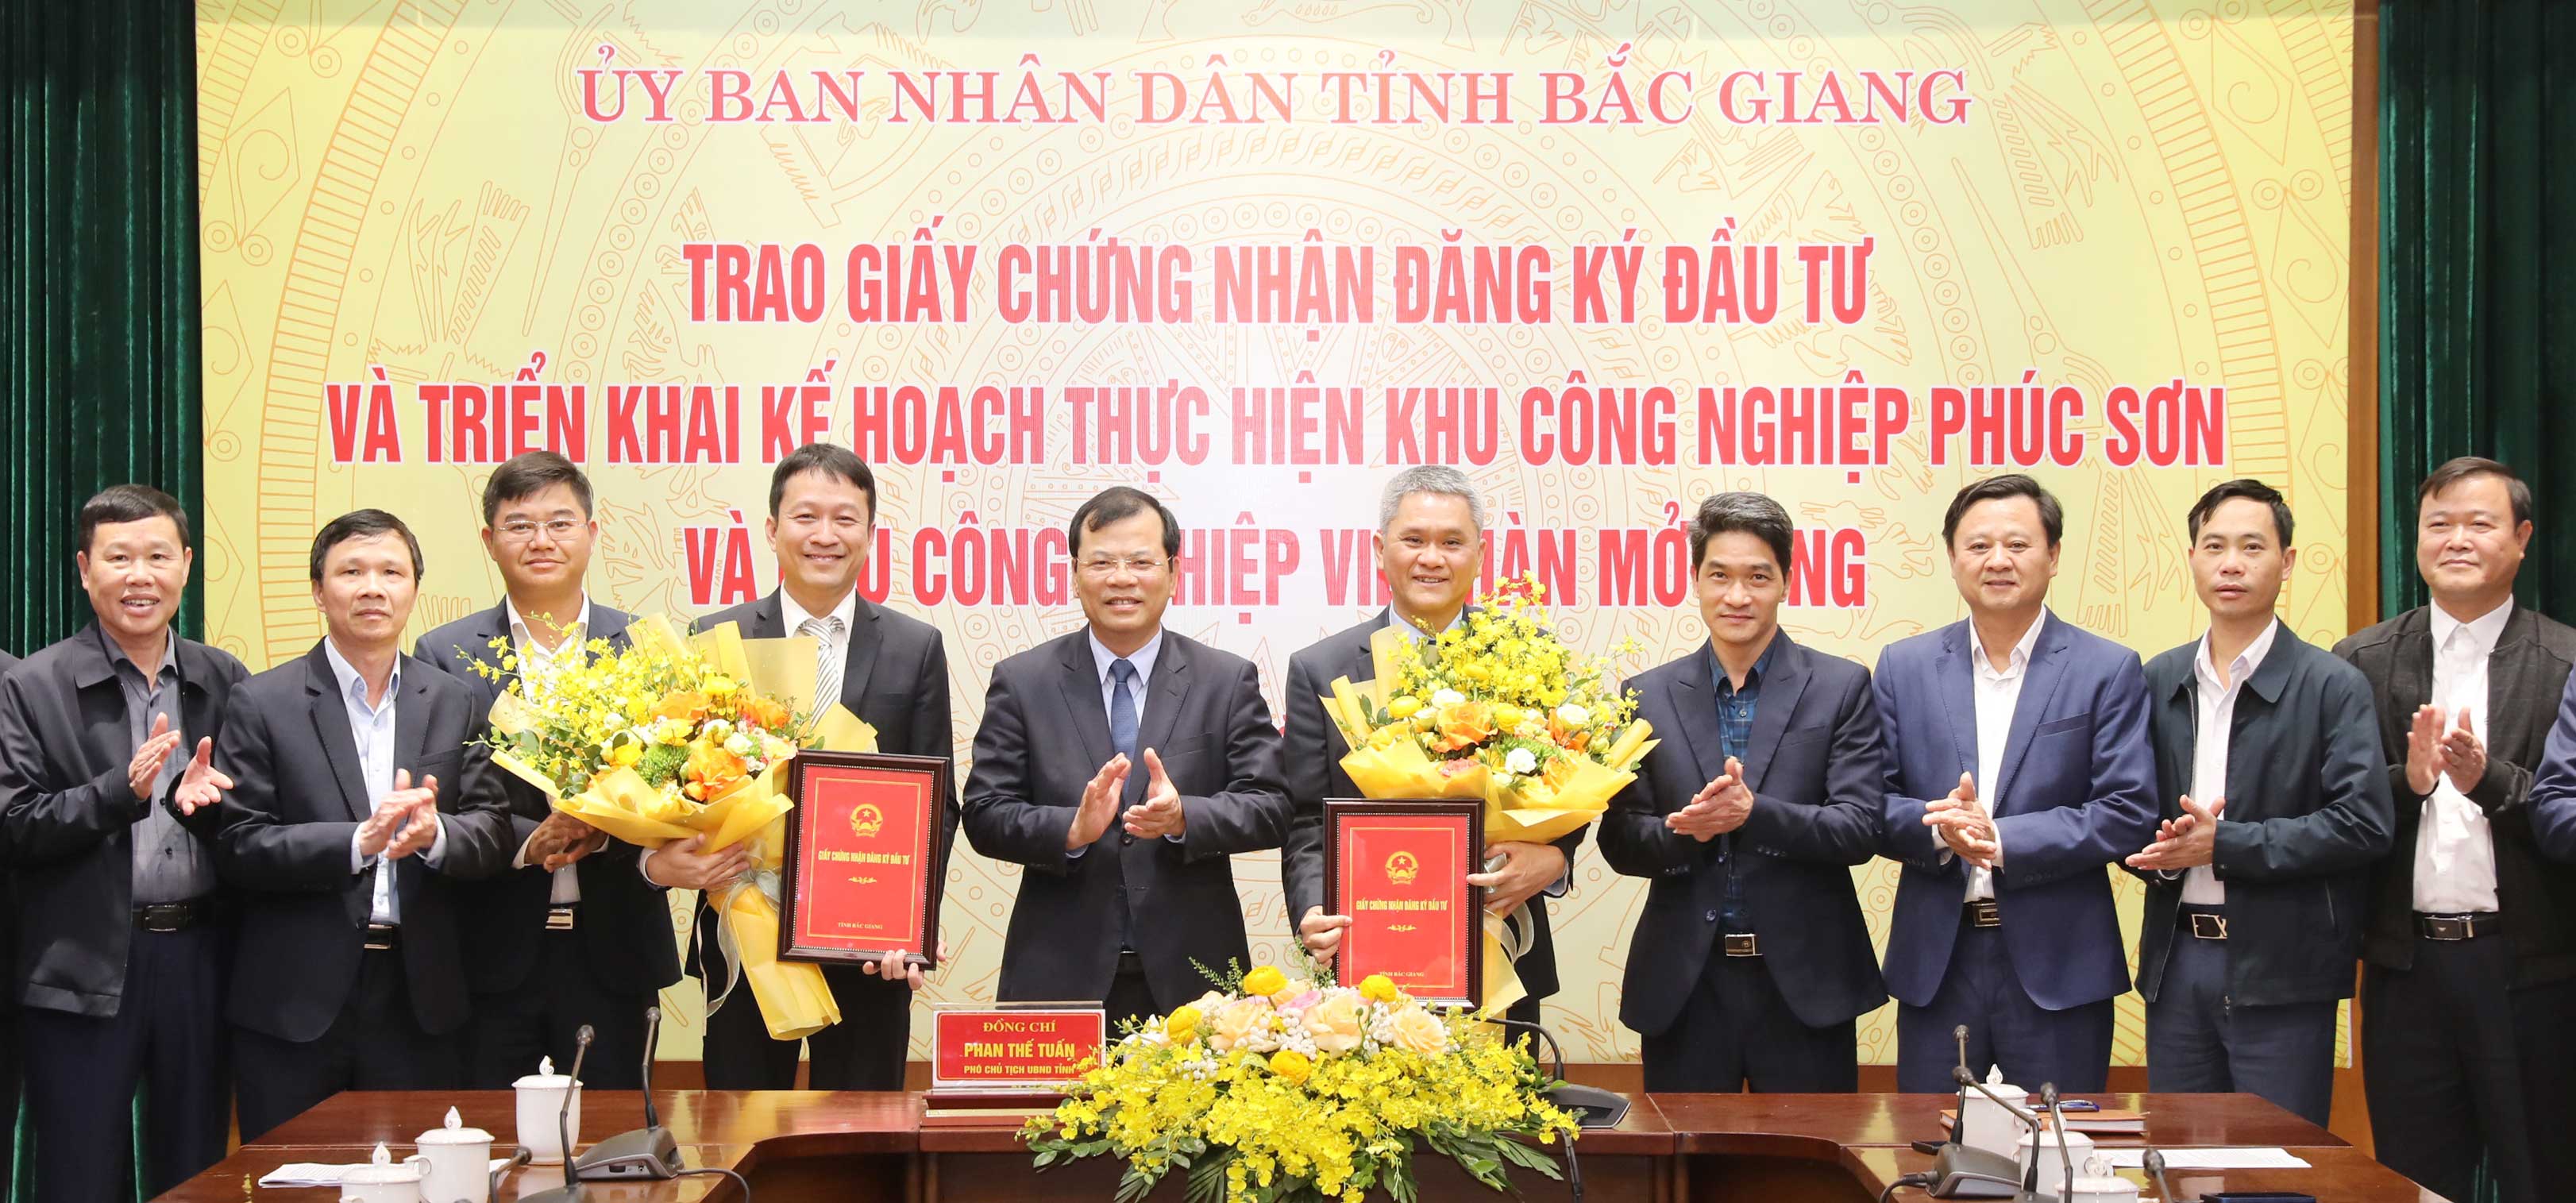 Trao giấy chứng nhận đầu tư, triển khai kế hoạch xây dựng KCN Phúc Sơn và Việt Hàn mở rộng